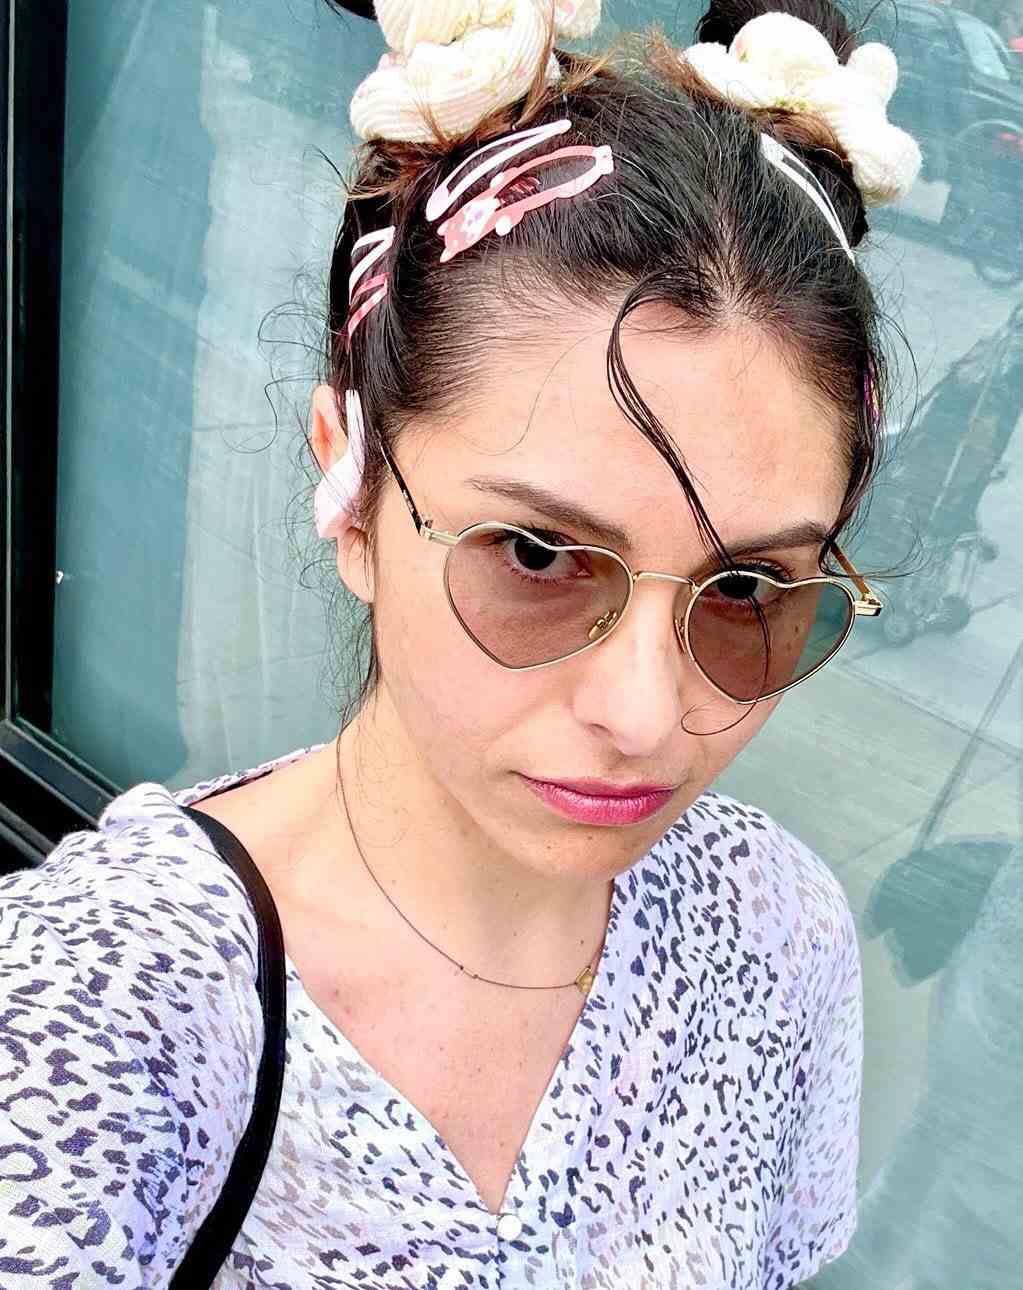 Chloe Toscano in einem Selfie für die Kamera mit Haarspangen im Haar und einer herzförmigen Sonnenbrille